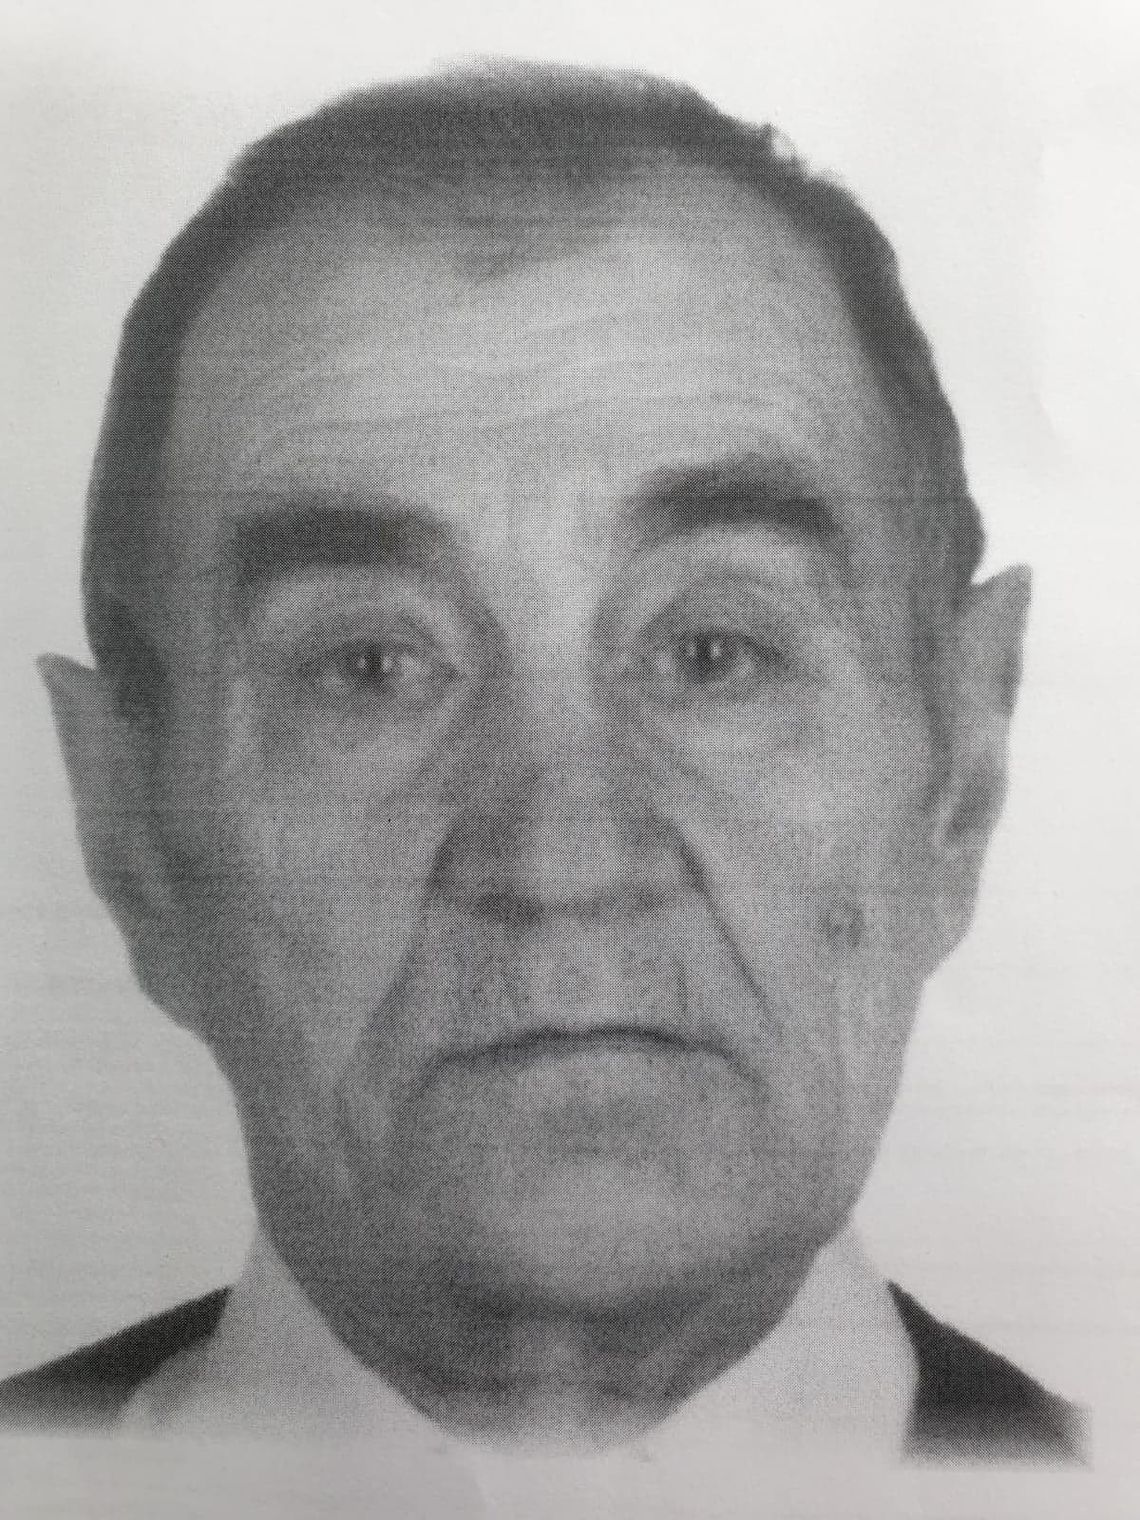 Zaginął 77-letni Bernard WUDZIŃSKI mieszkaniec Brodnicy